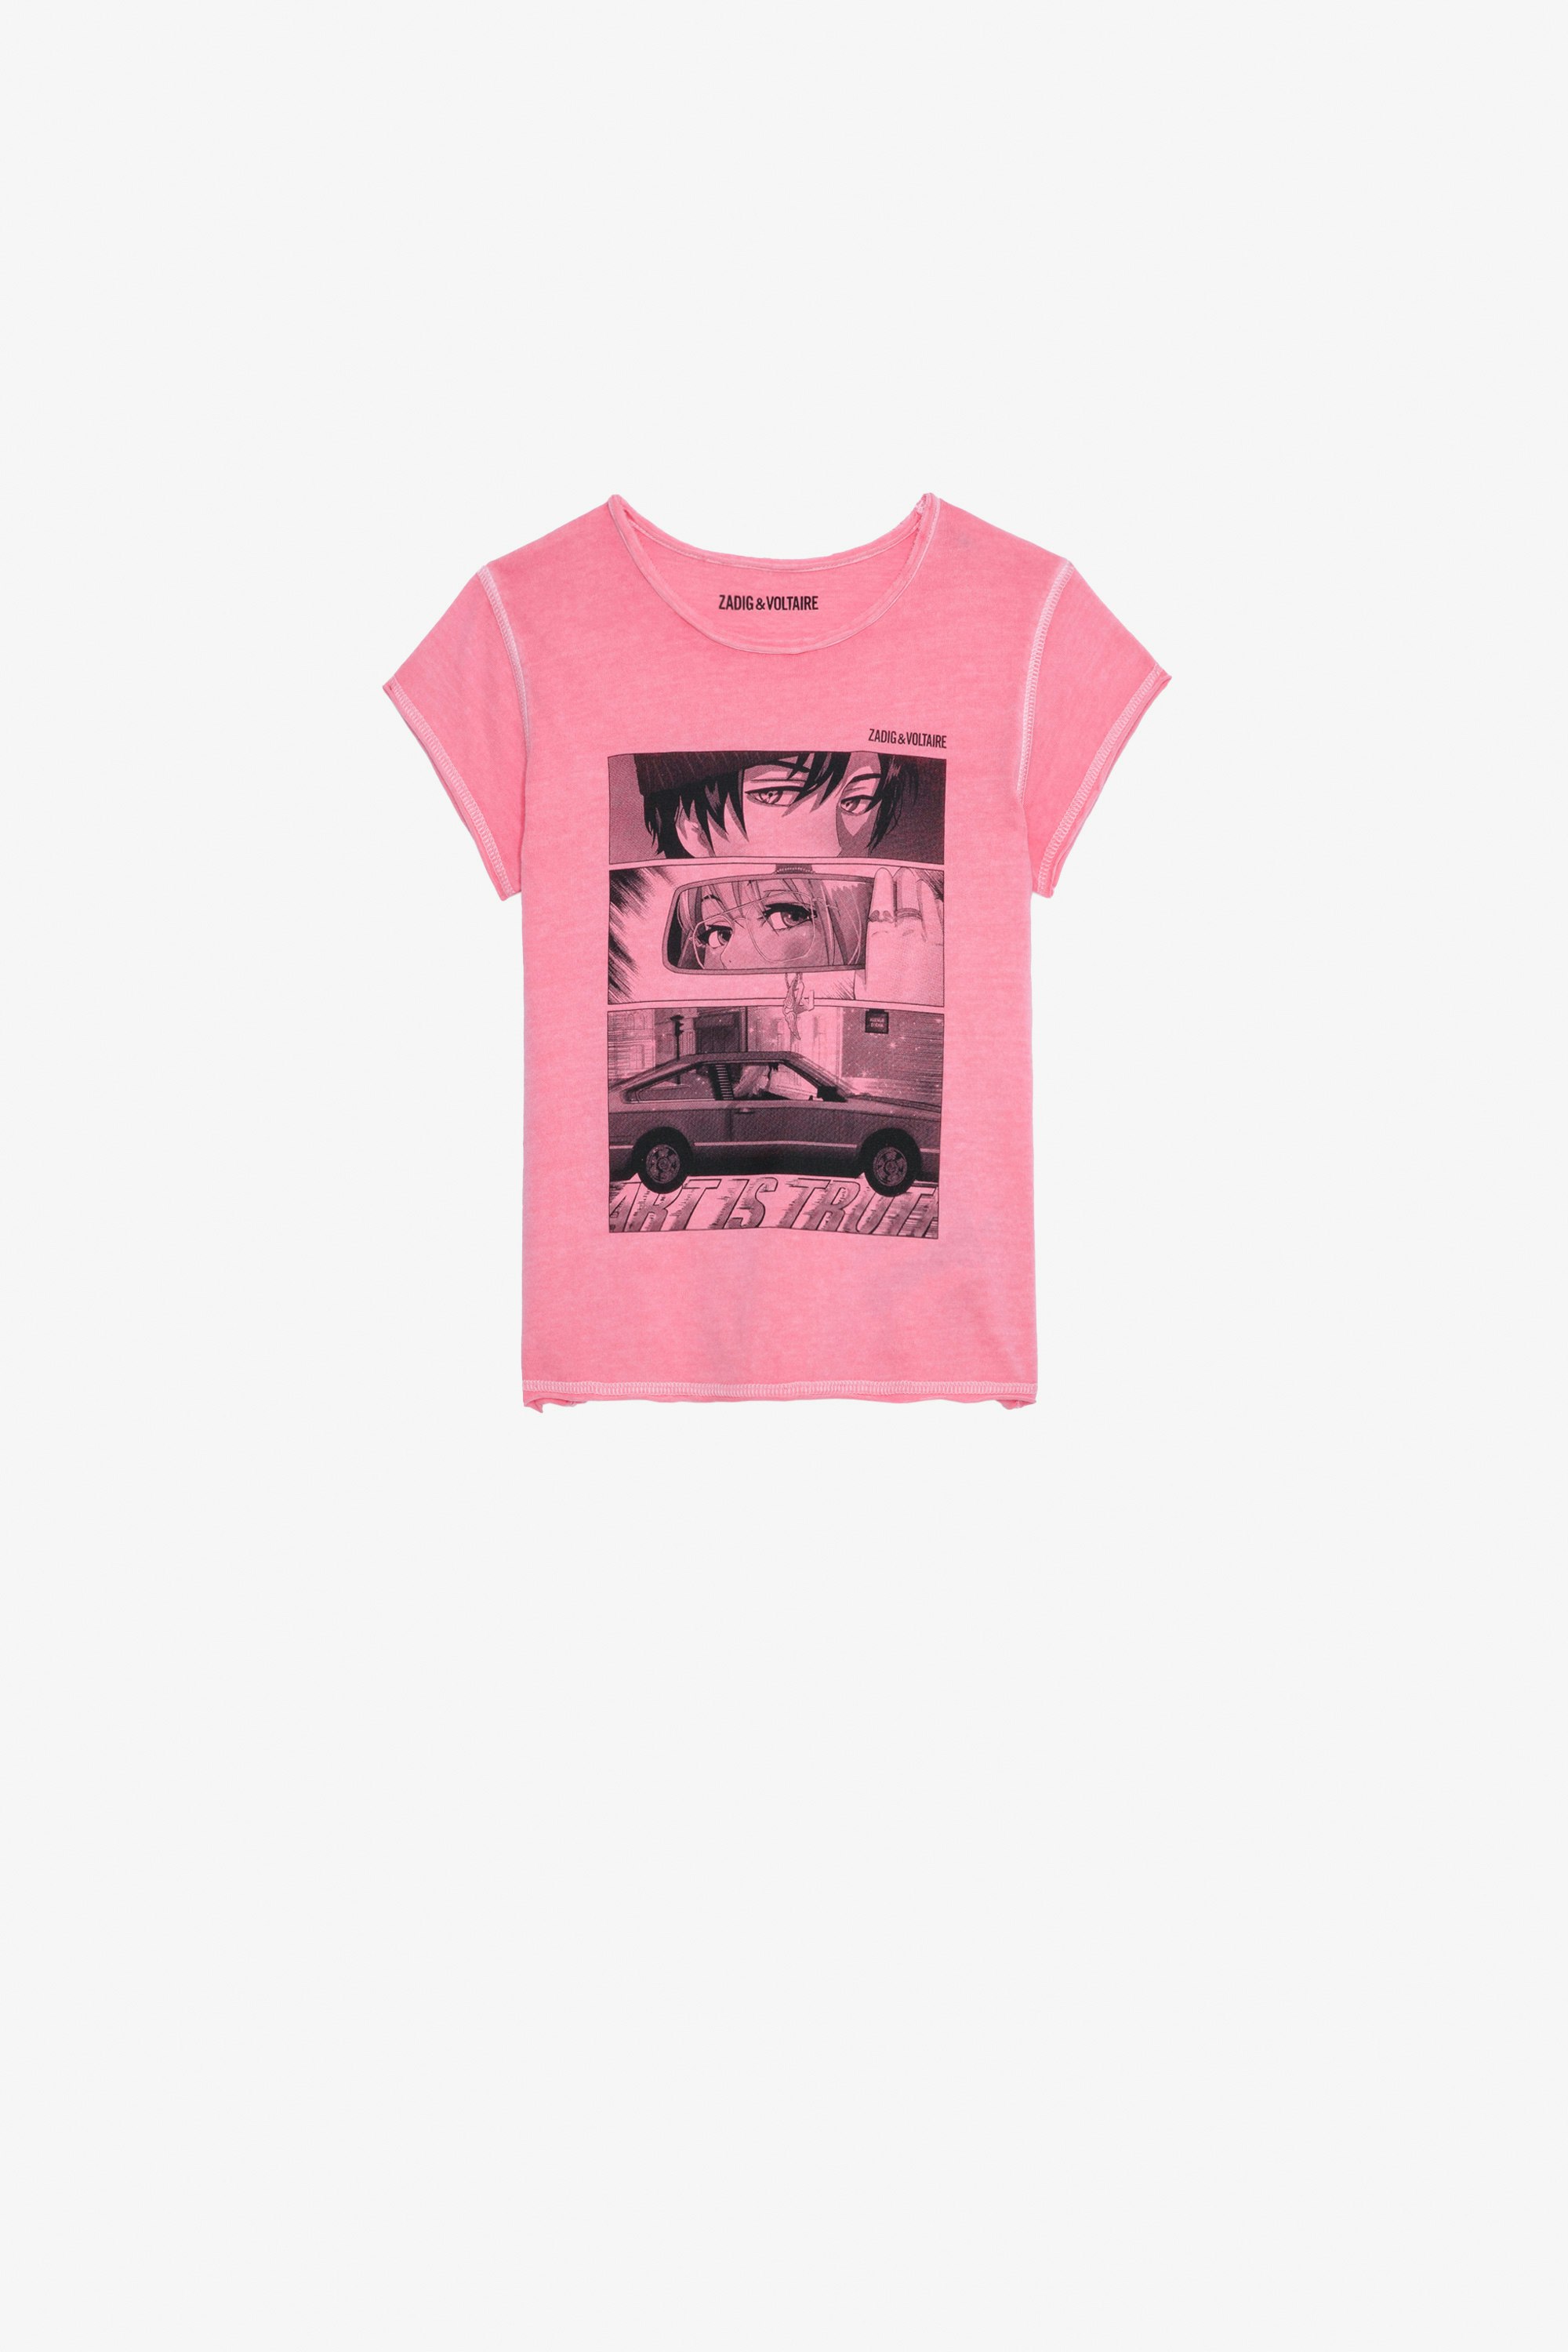 Amber Girls’ T-Shirt Girls pink short-sleeved cotton jersey T-shirt with print.